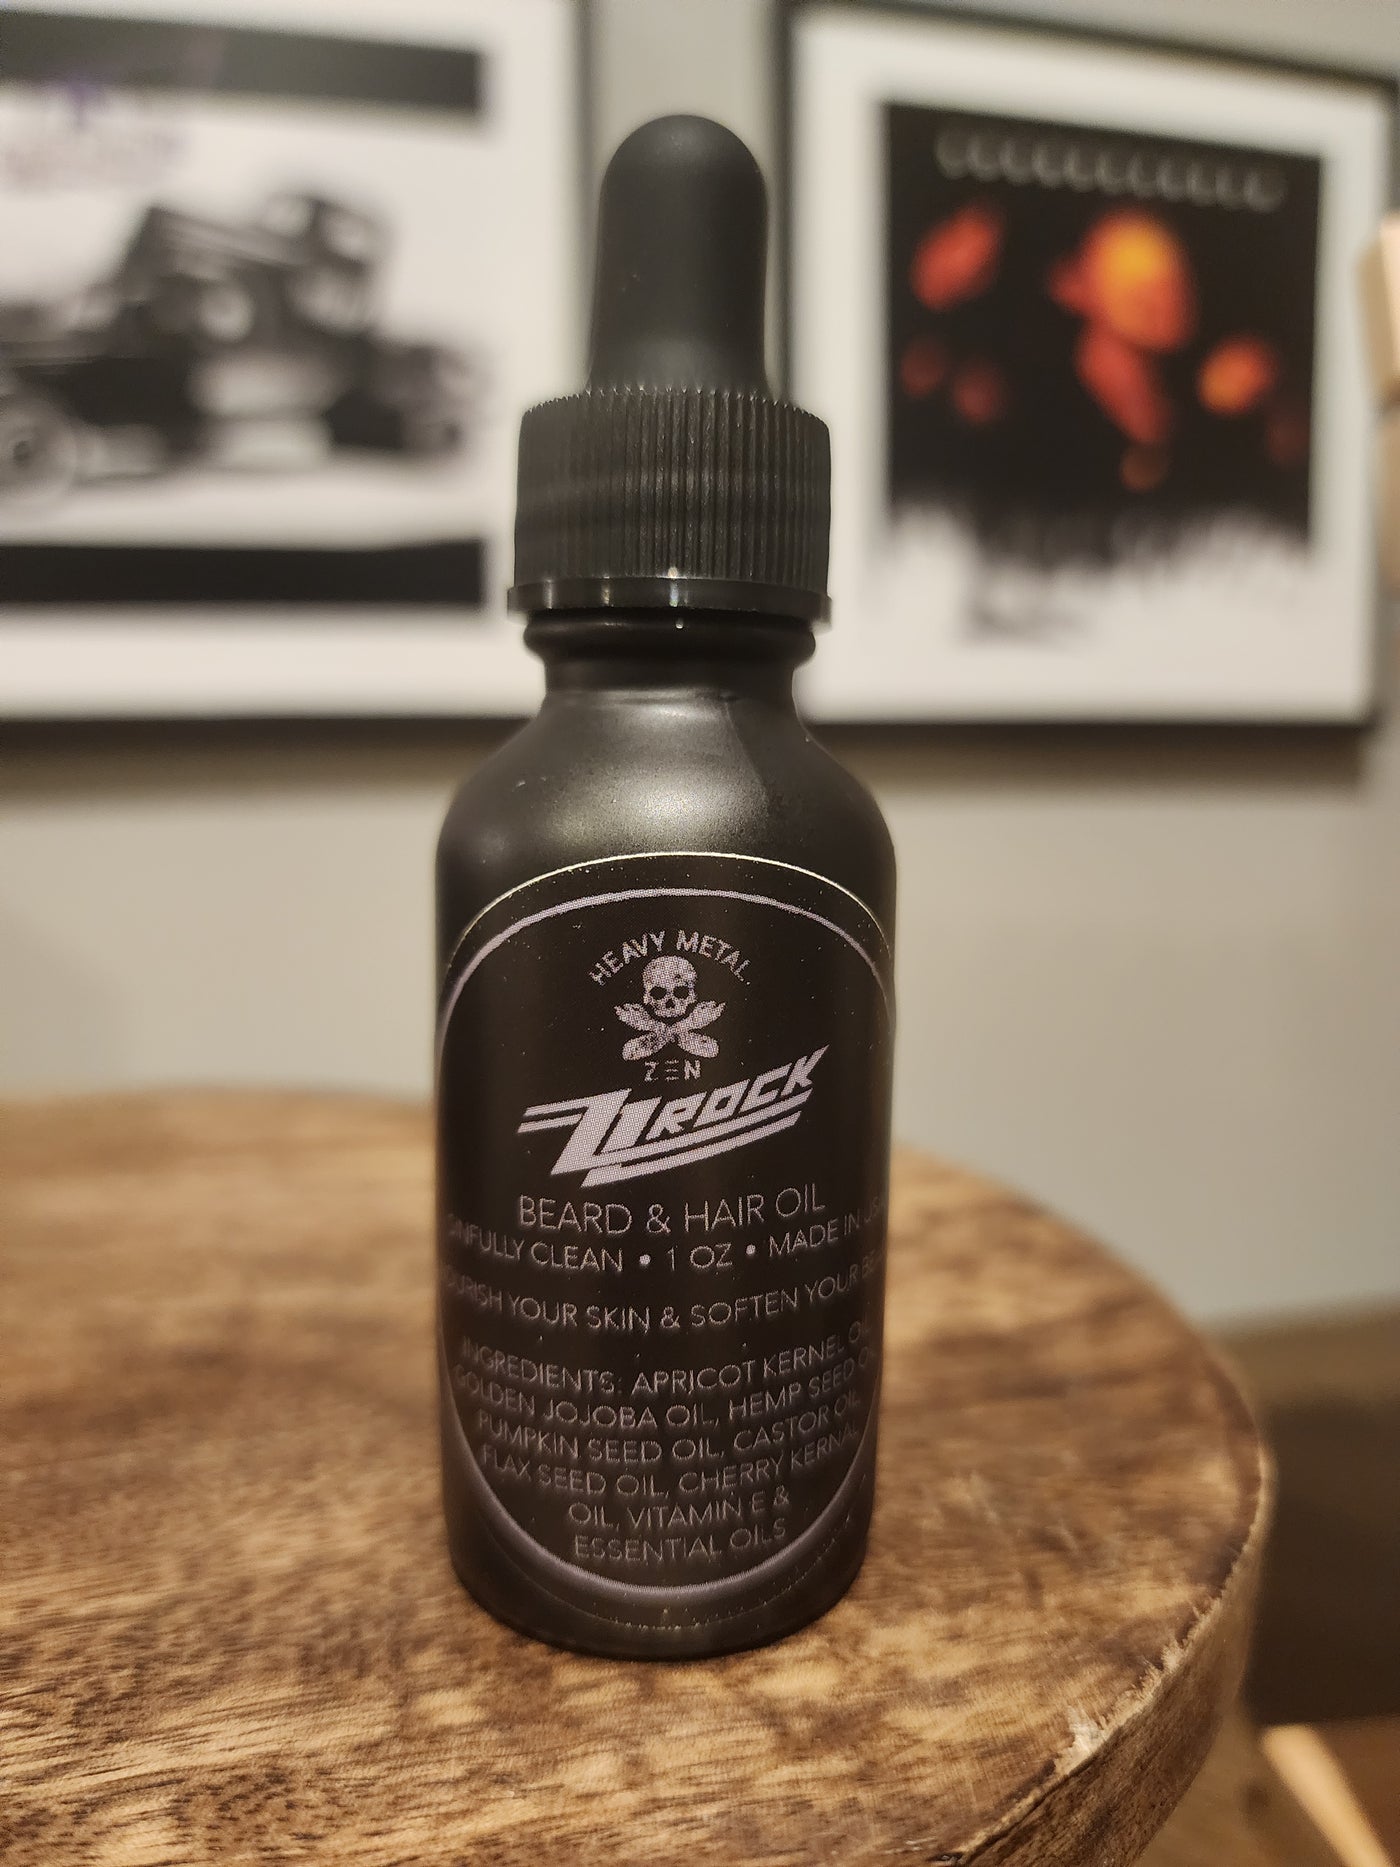 ZZ Rock Beard and Hair Oil